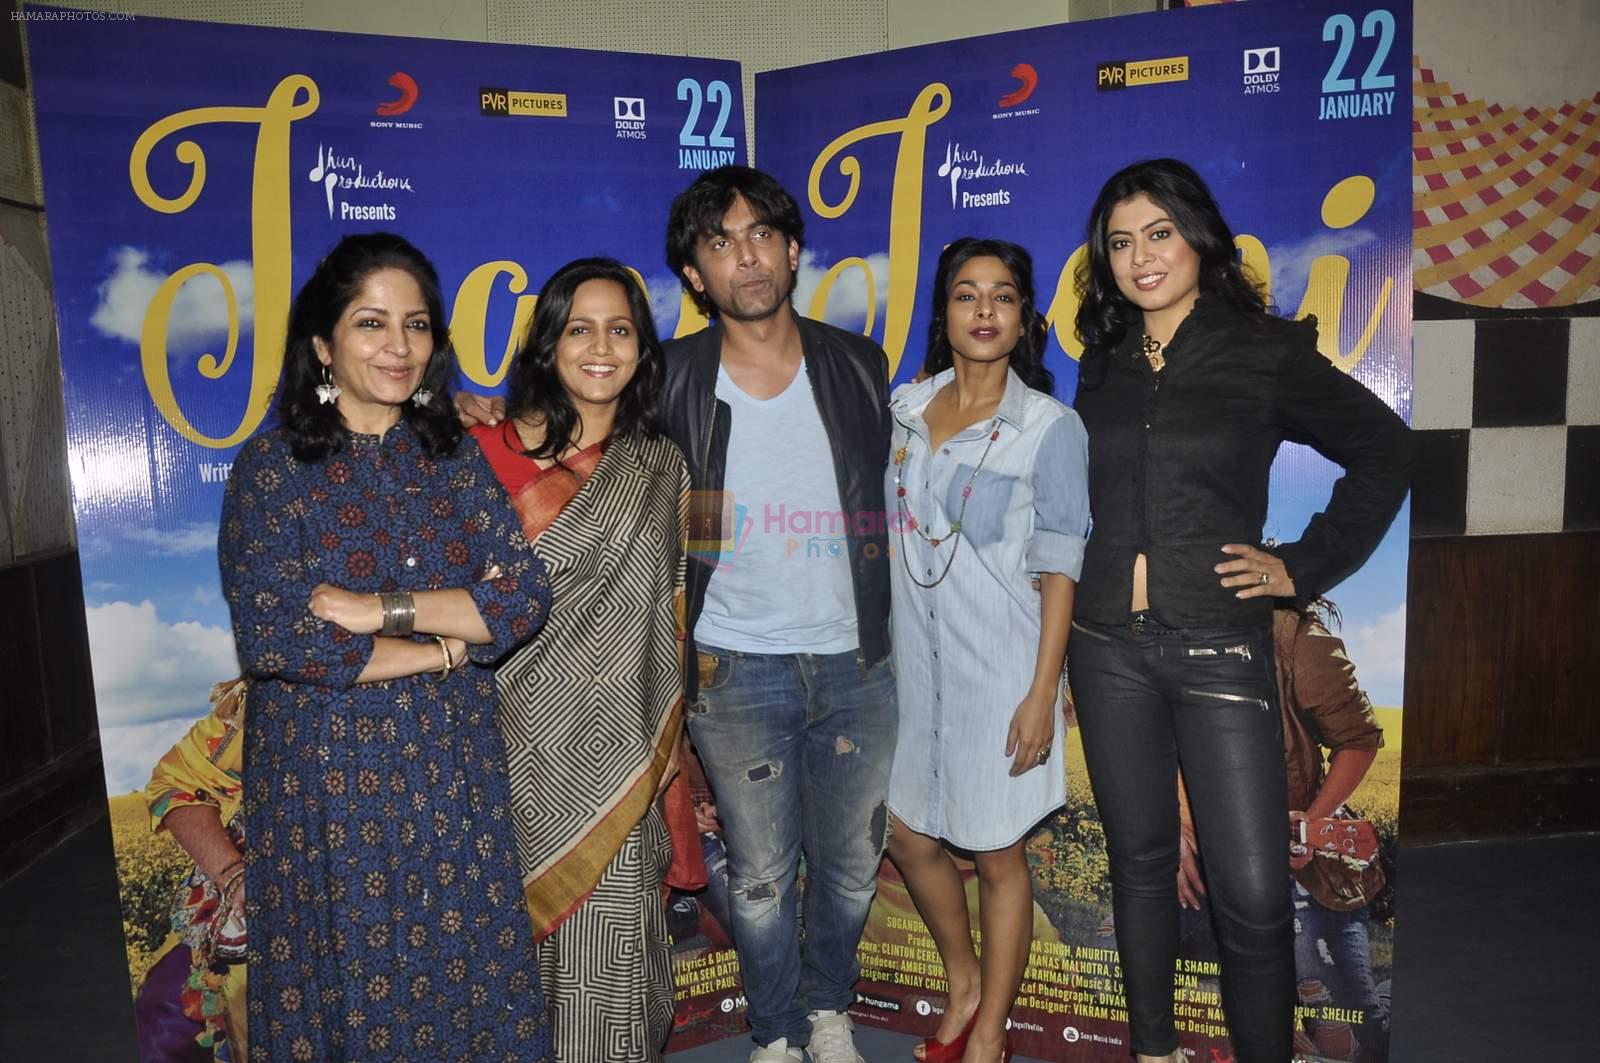 Sugandha Garg, Siddhanth Behl, Aniruta Jha, Sadhana Singh at Jugni film promotions on 13th Jan 2016